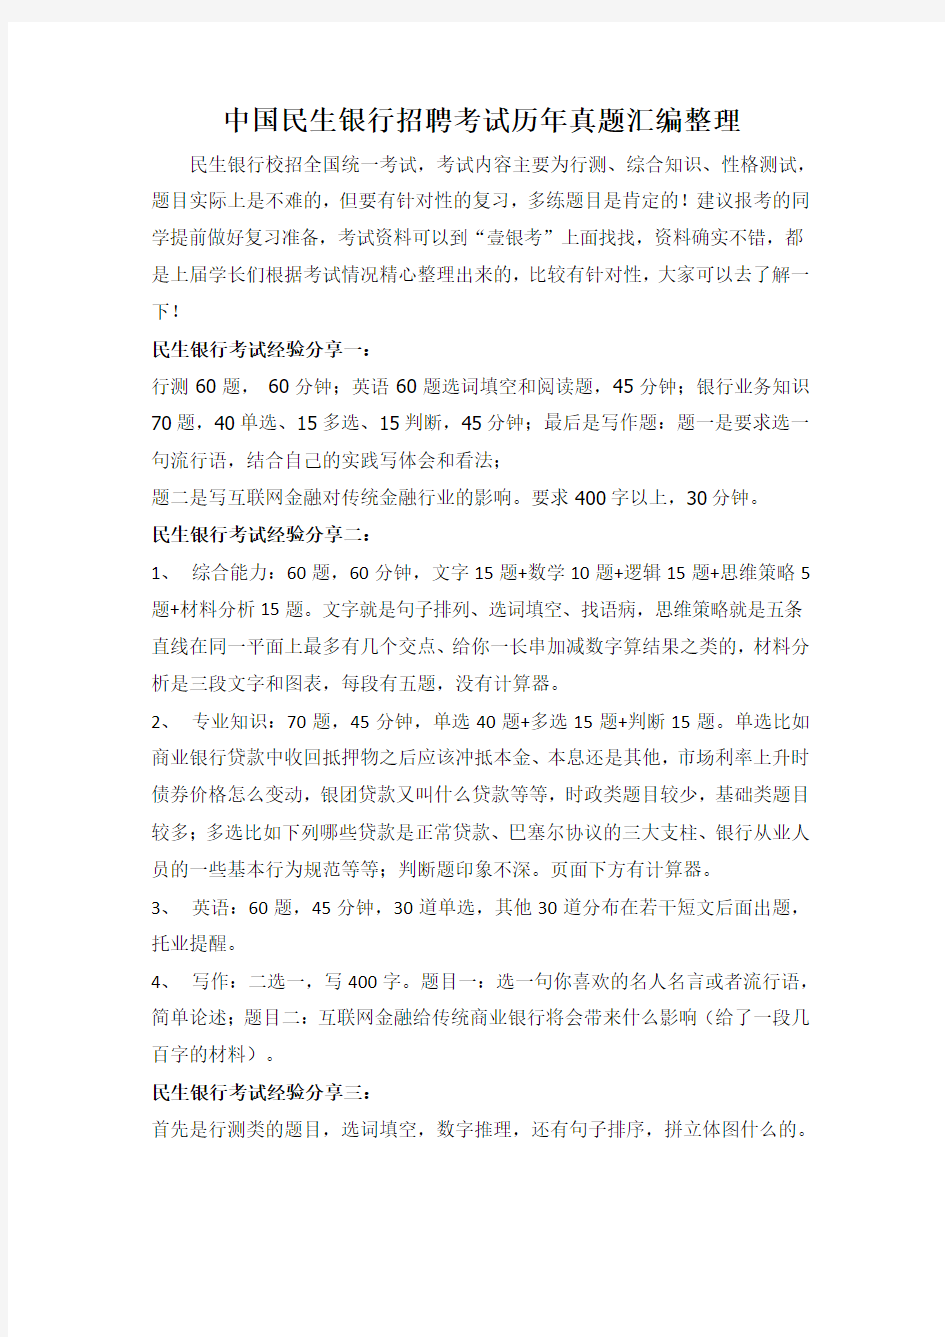 中国民生银行校园招聘在线测试考试笔试题目试卷真题